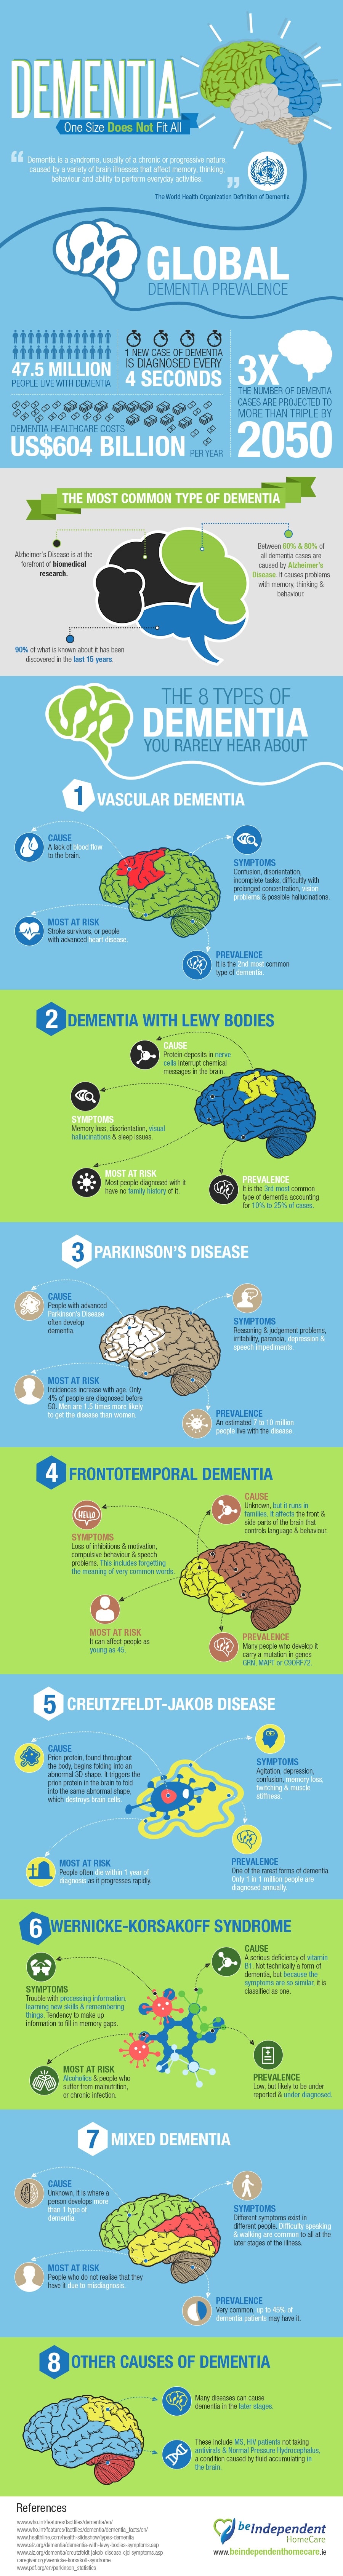 Understanding Different Types of Dementia